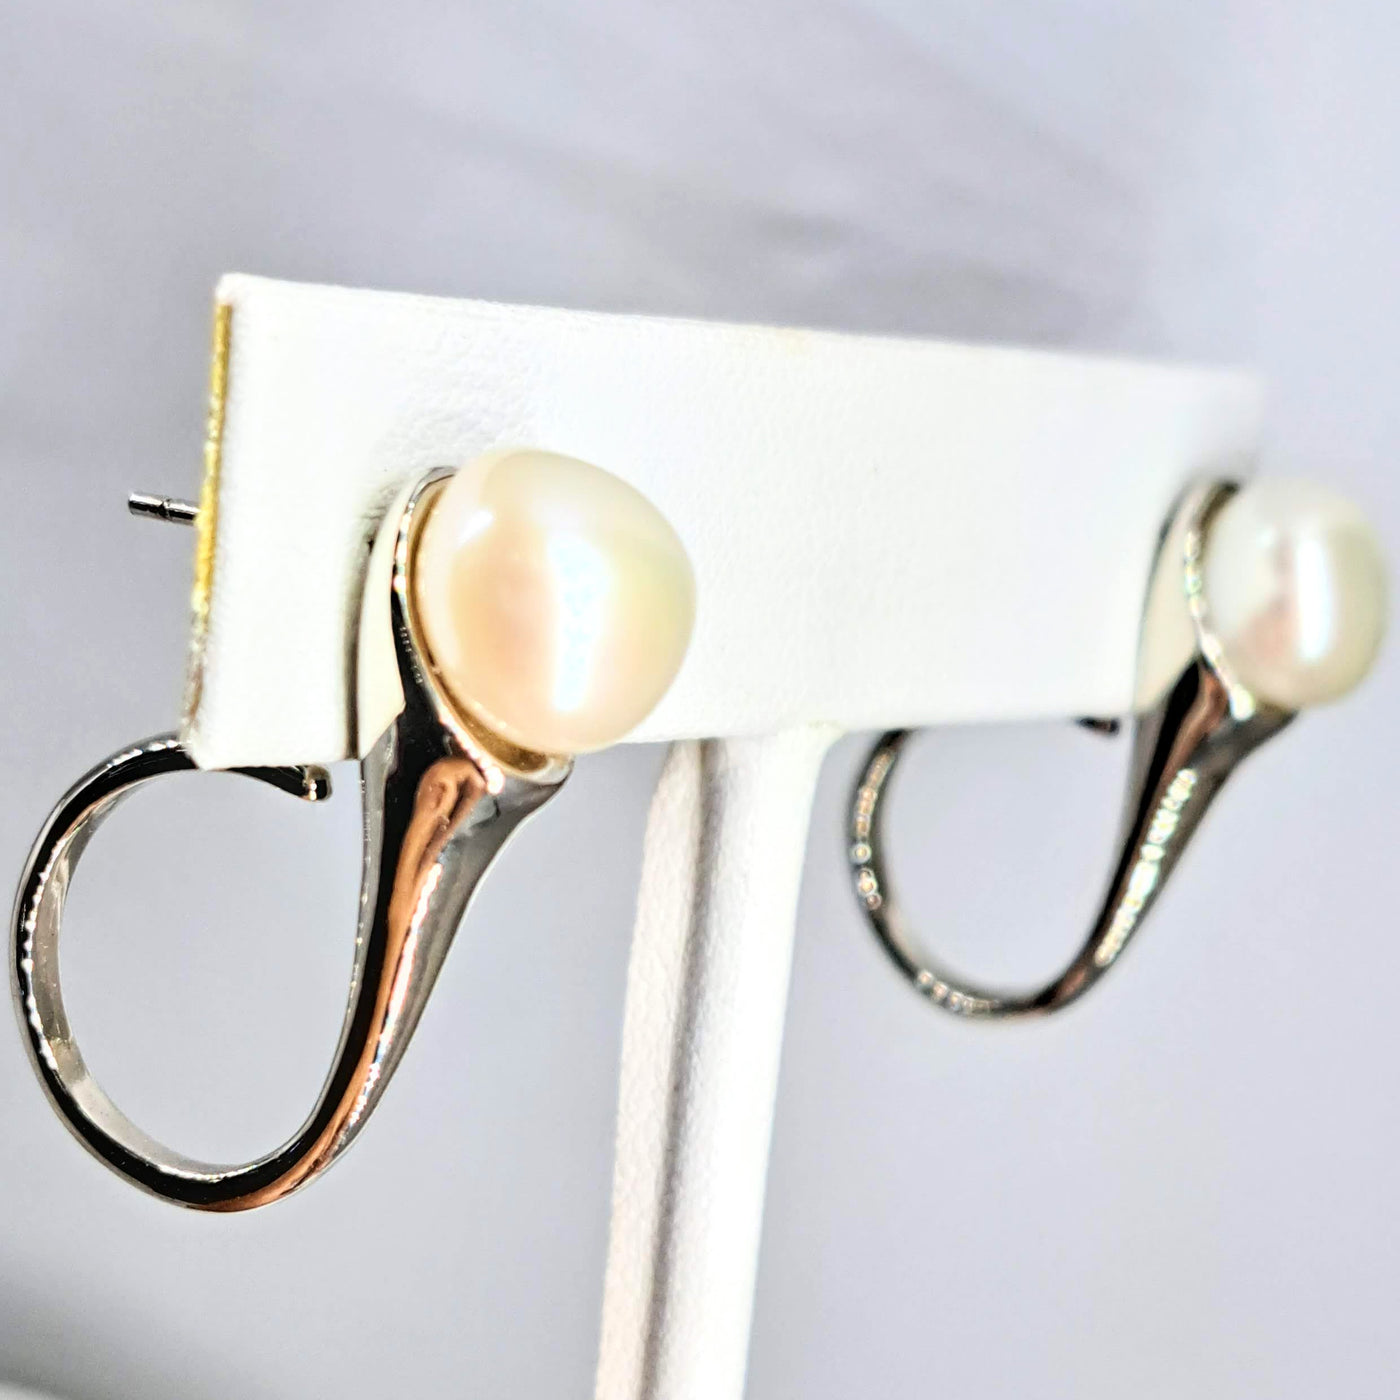 "Pearl Trumpets" 1.5" Earrings - Pearls, Sterling